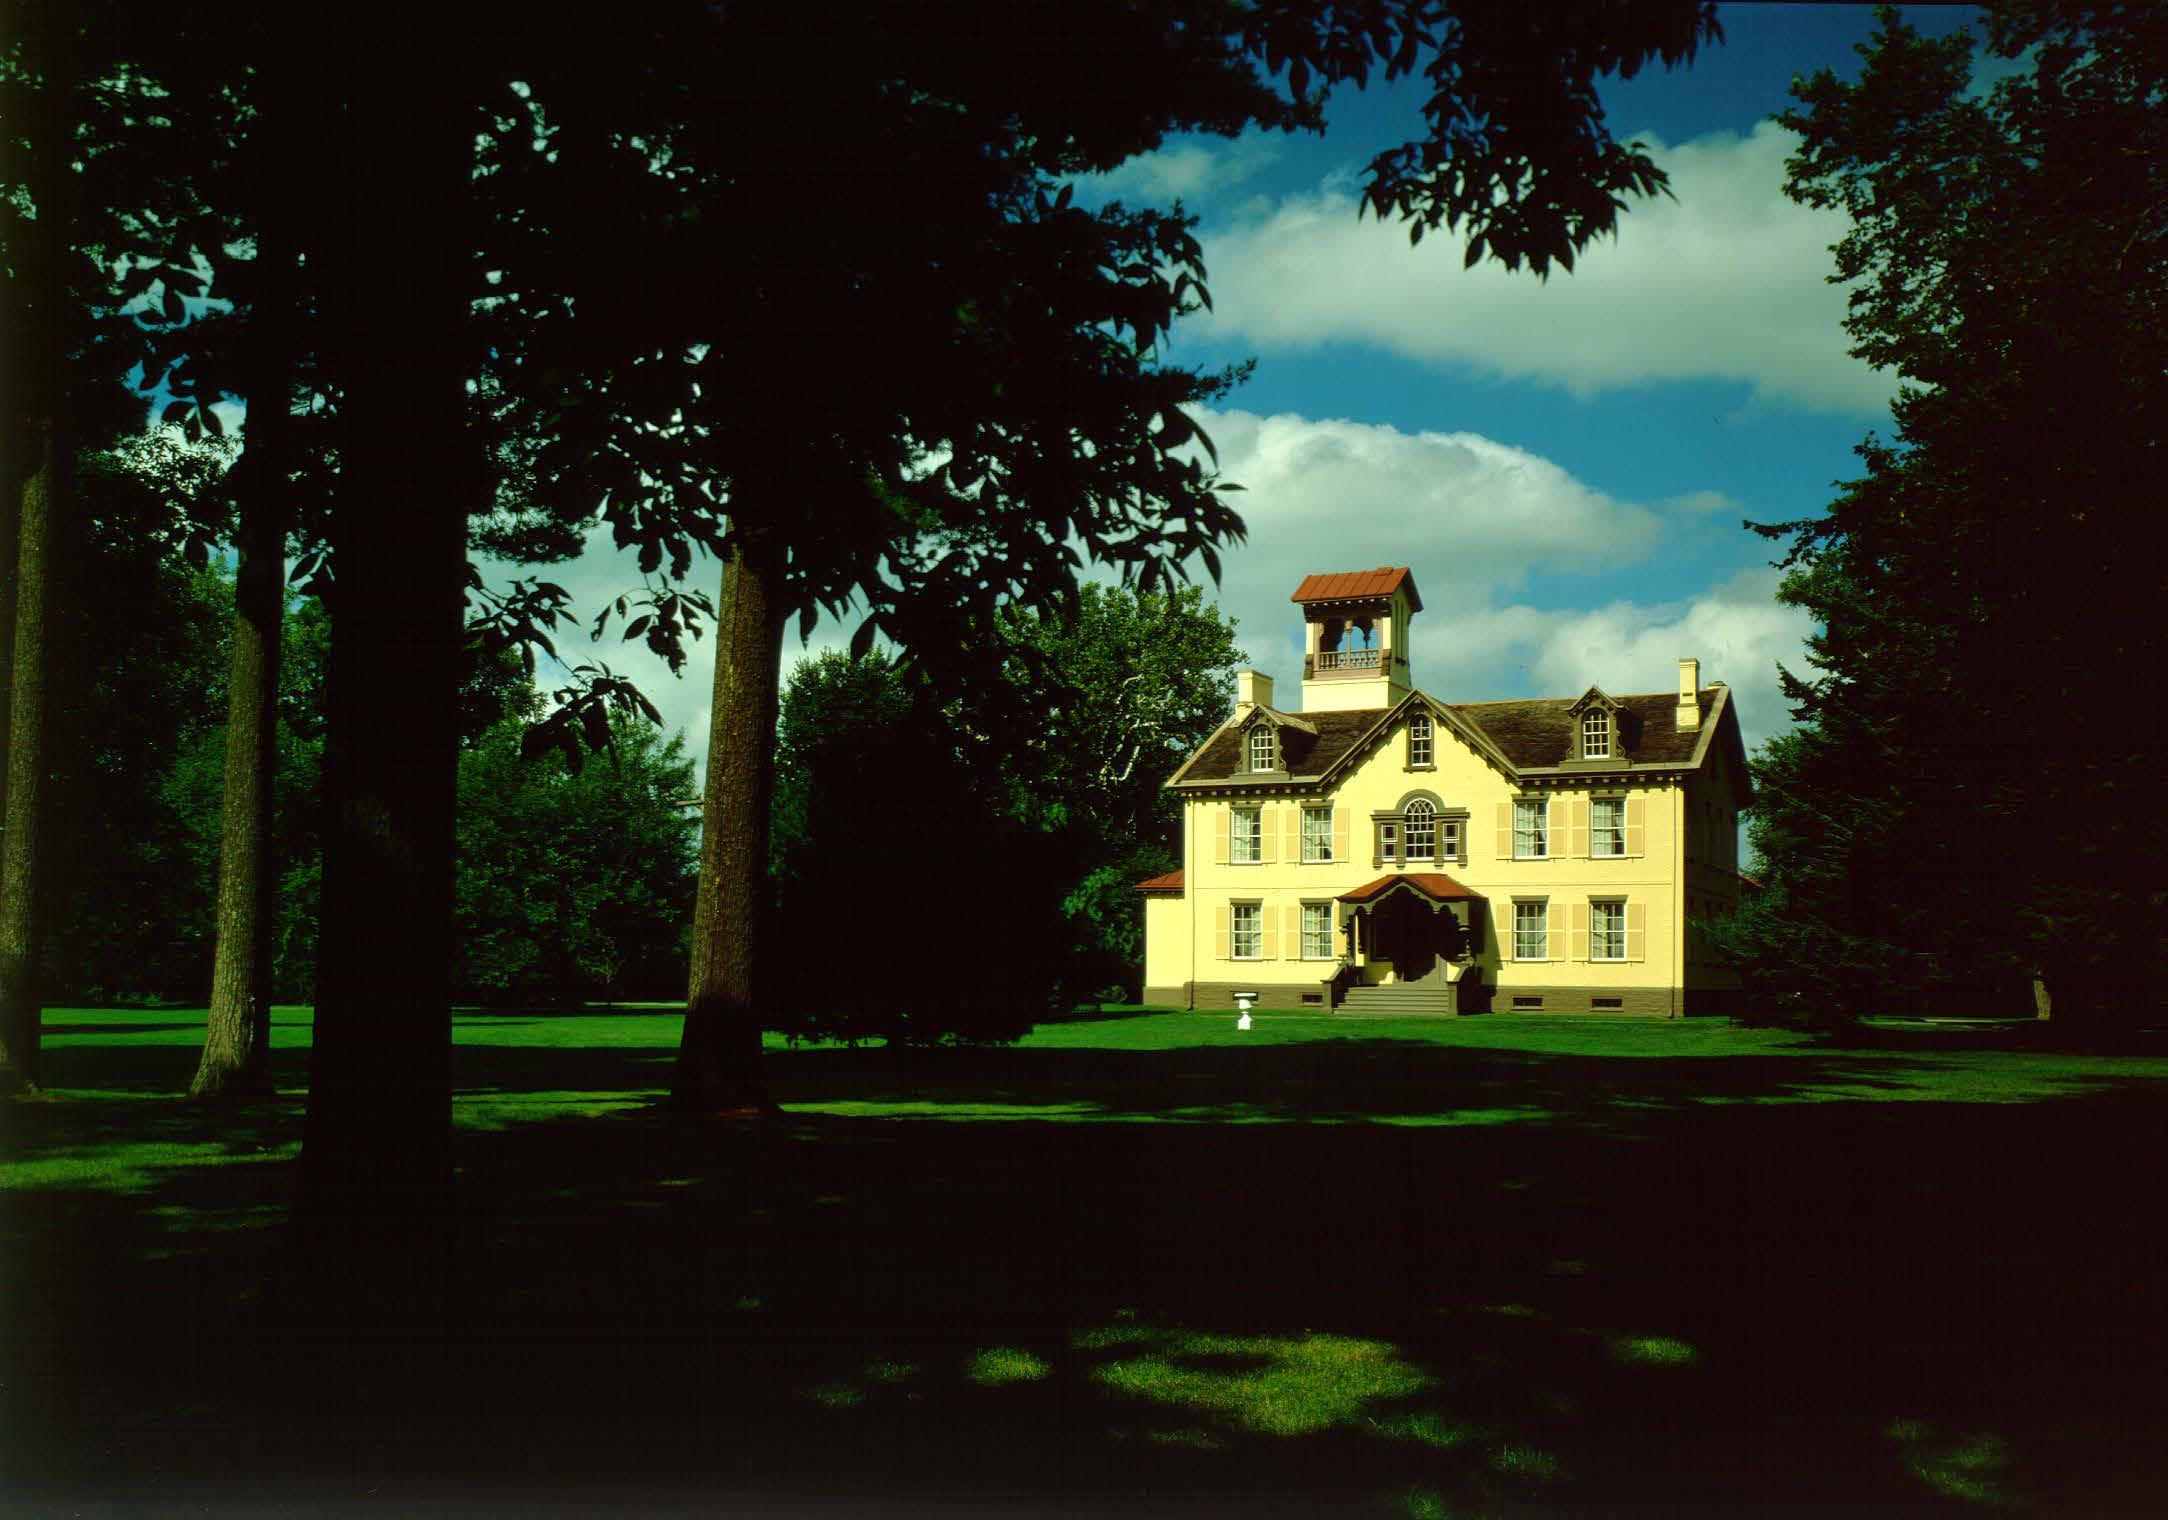 President Van Buren's Home